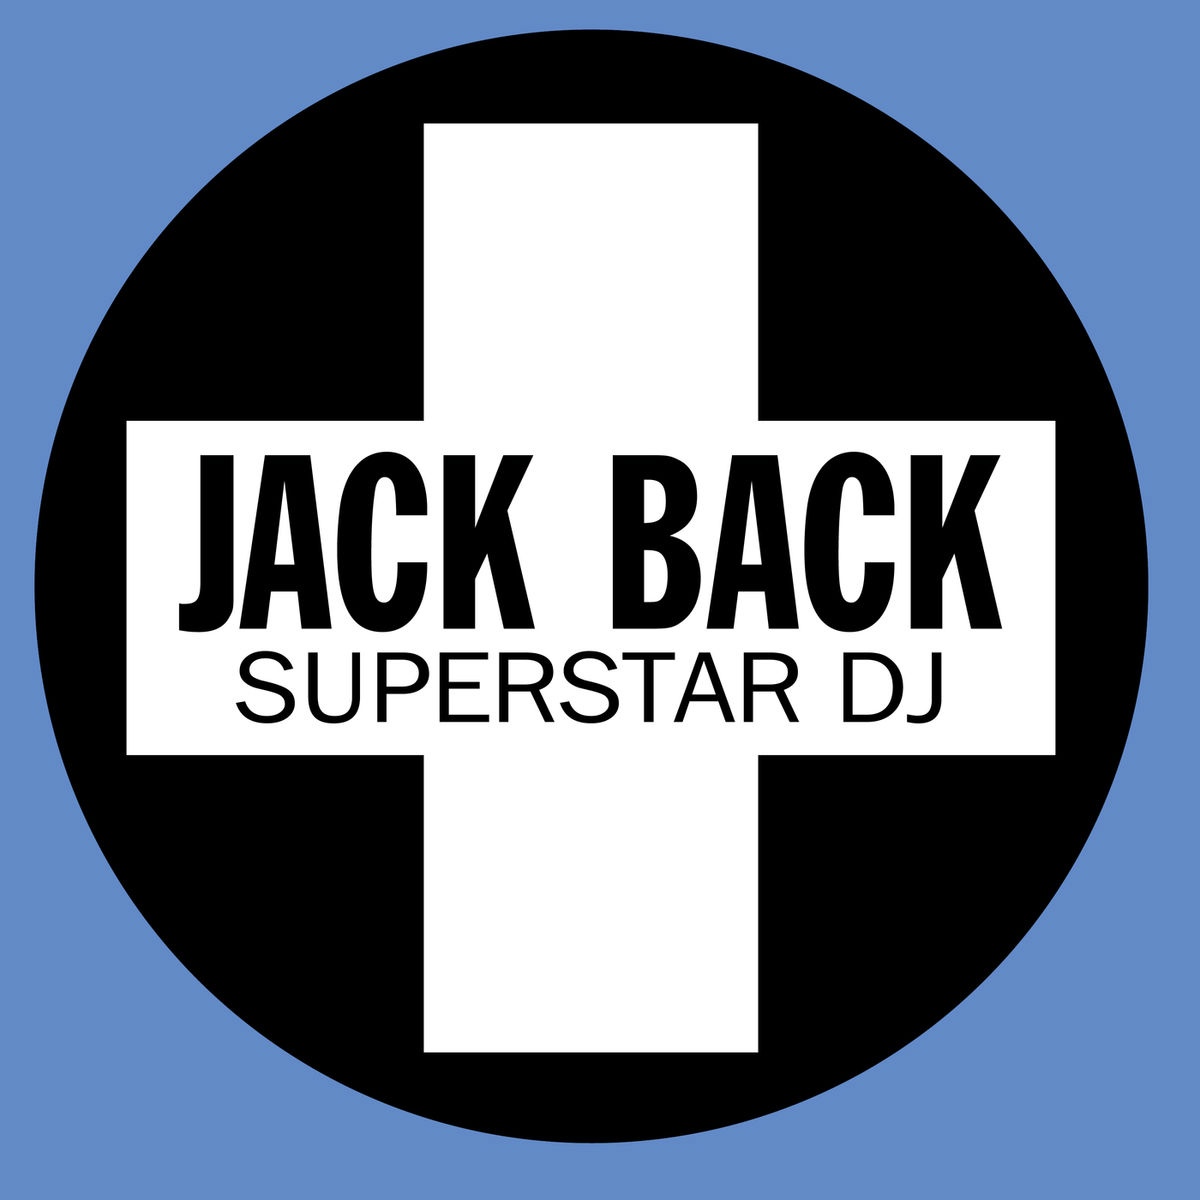 Jack Back — Superstar DJ cover artwork